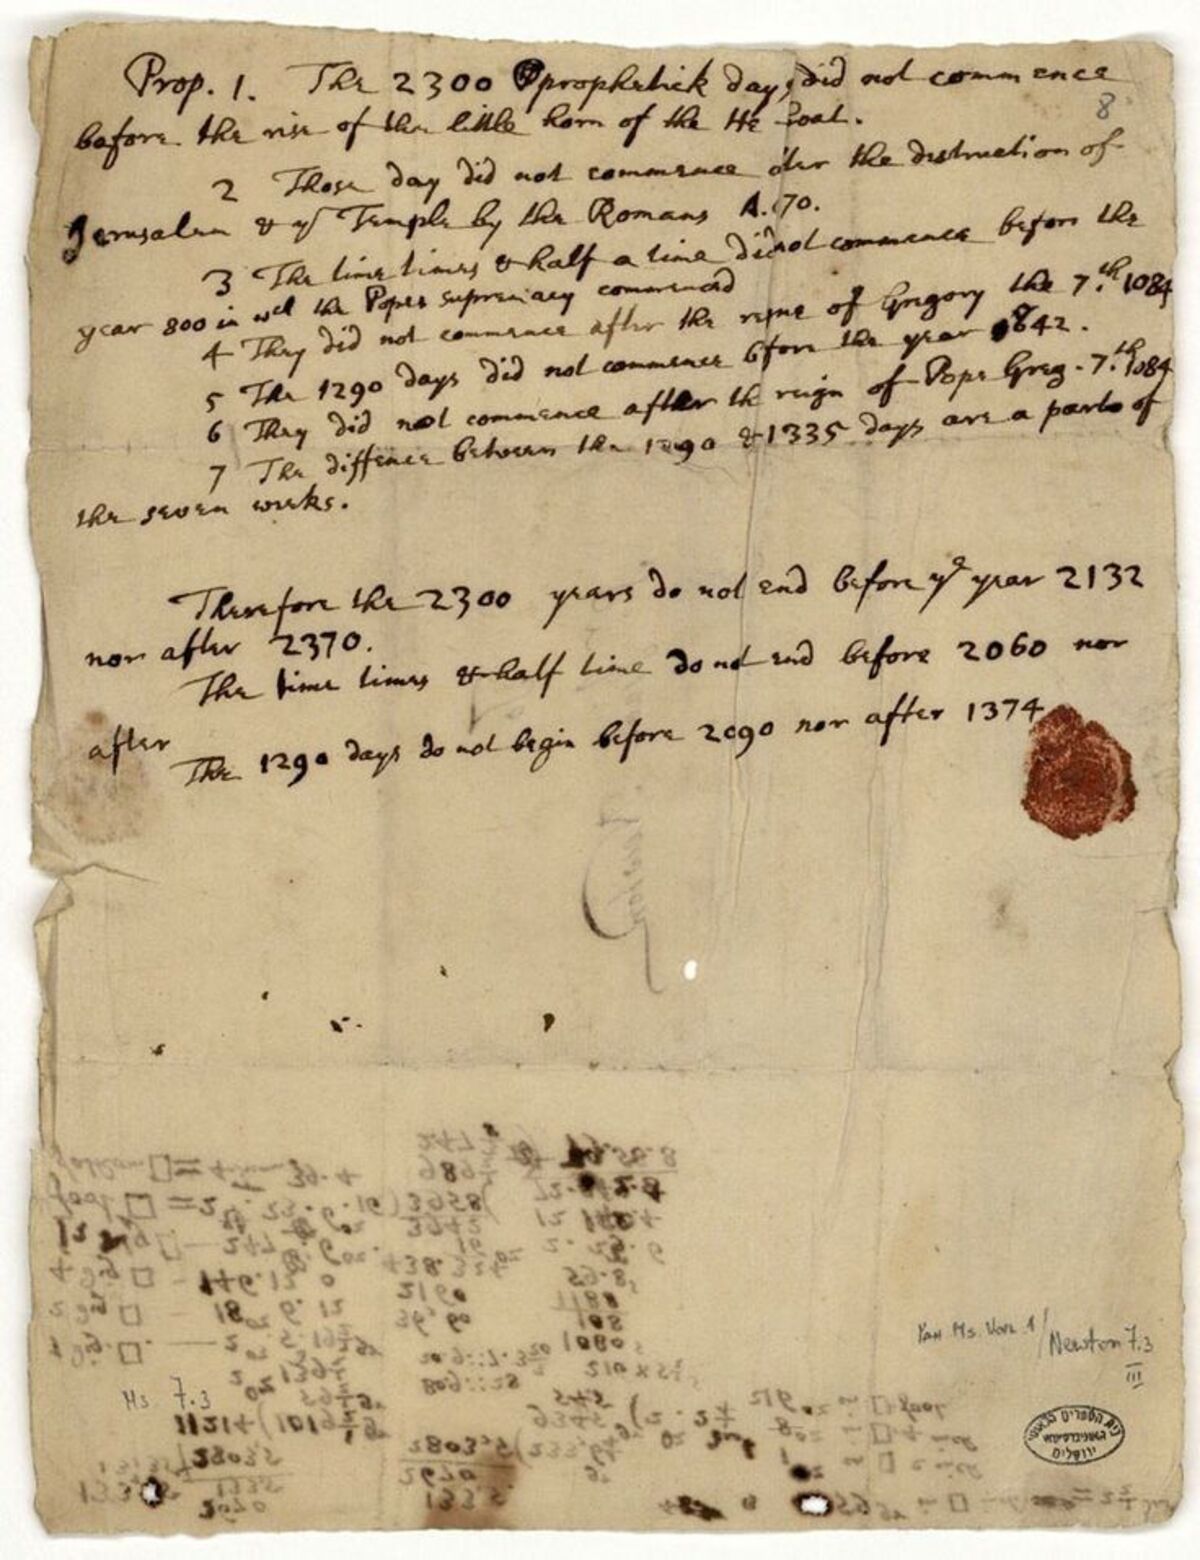 La carta de Isaac Newton donde pronostica que el fin del mundo se producirá en el año 2060